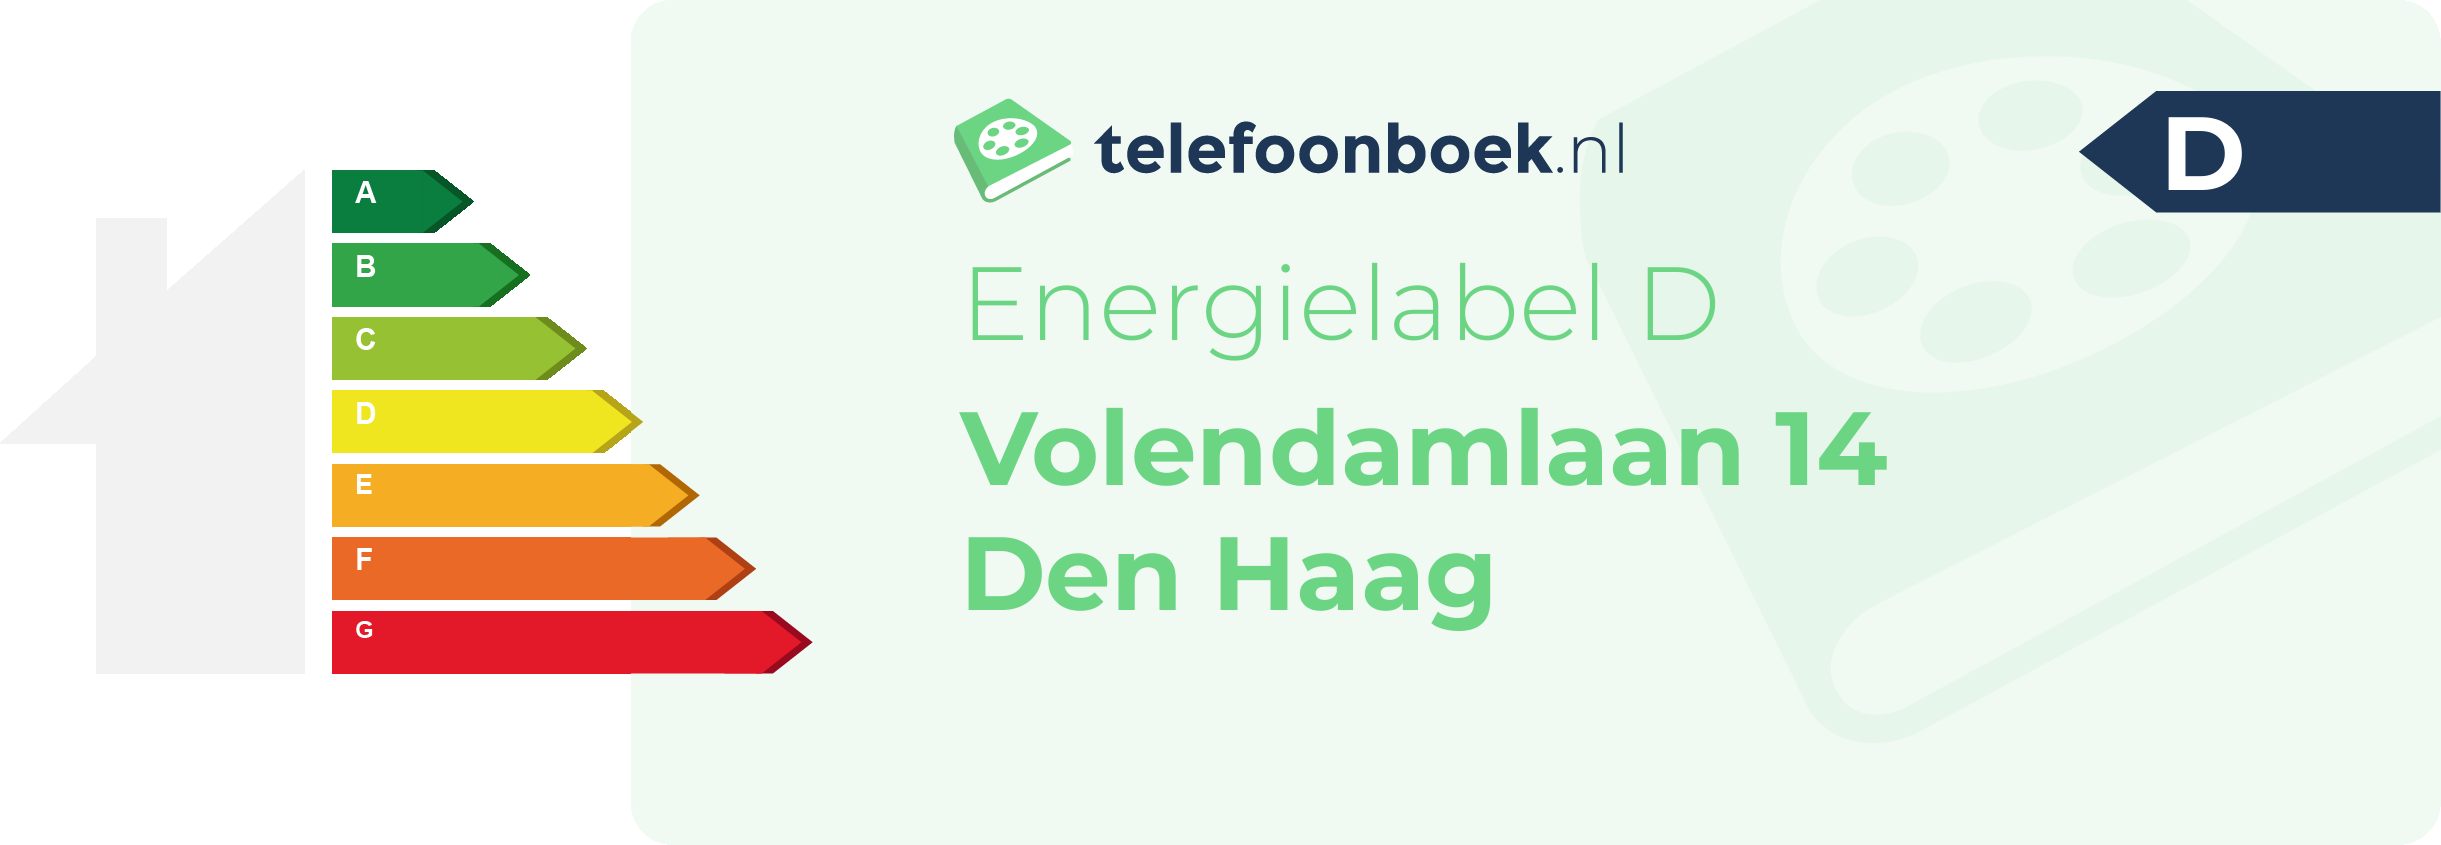 Energielabel Volendamlaan 14 Den Haag